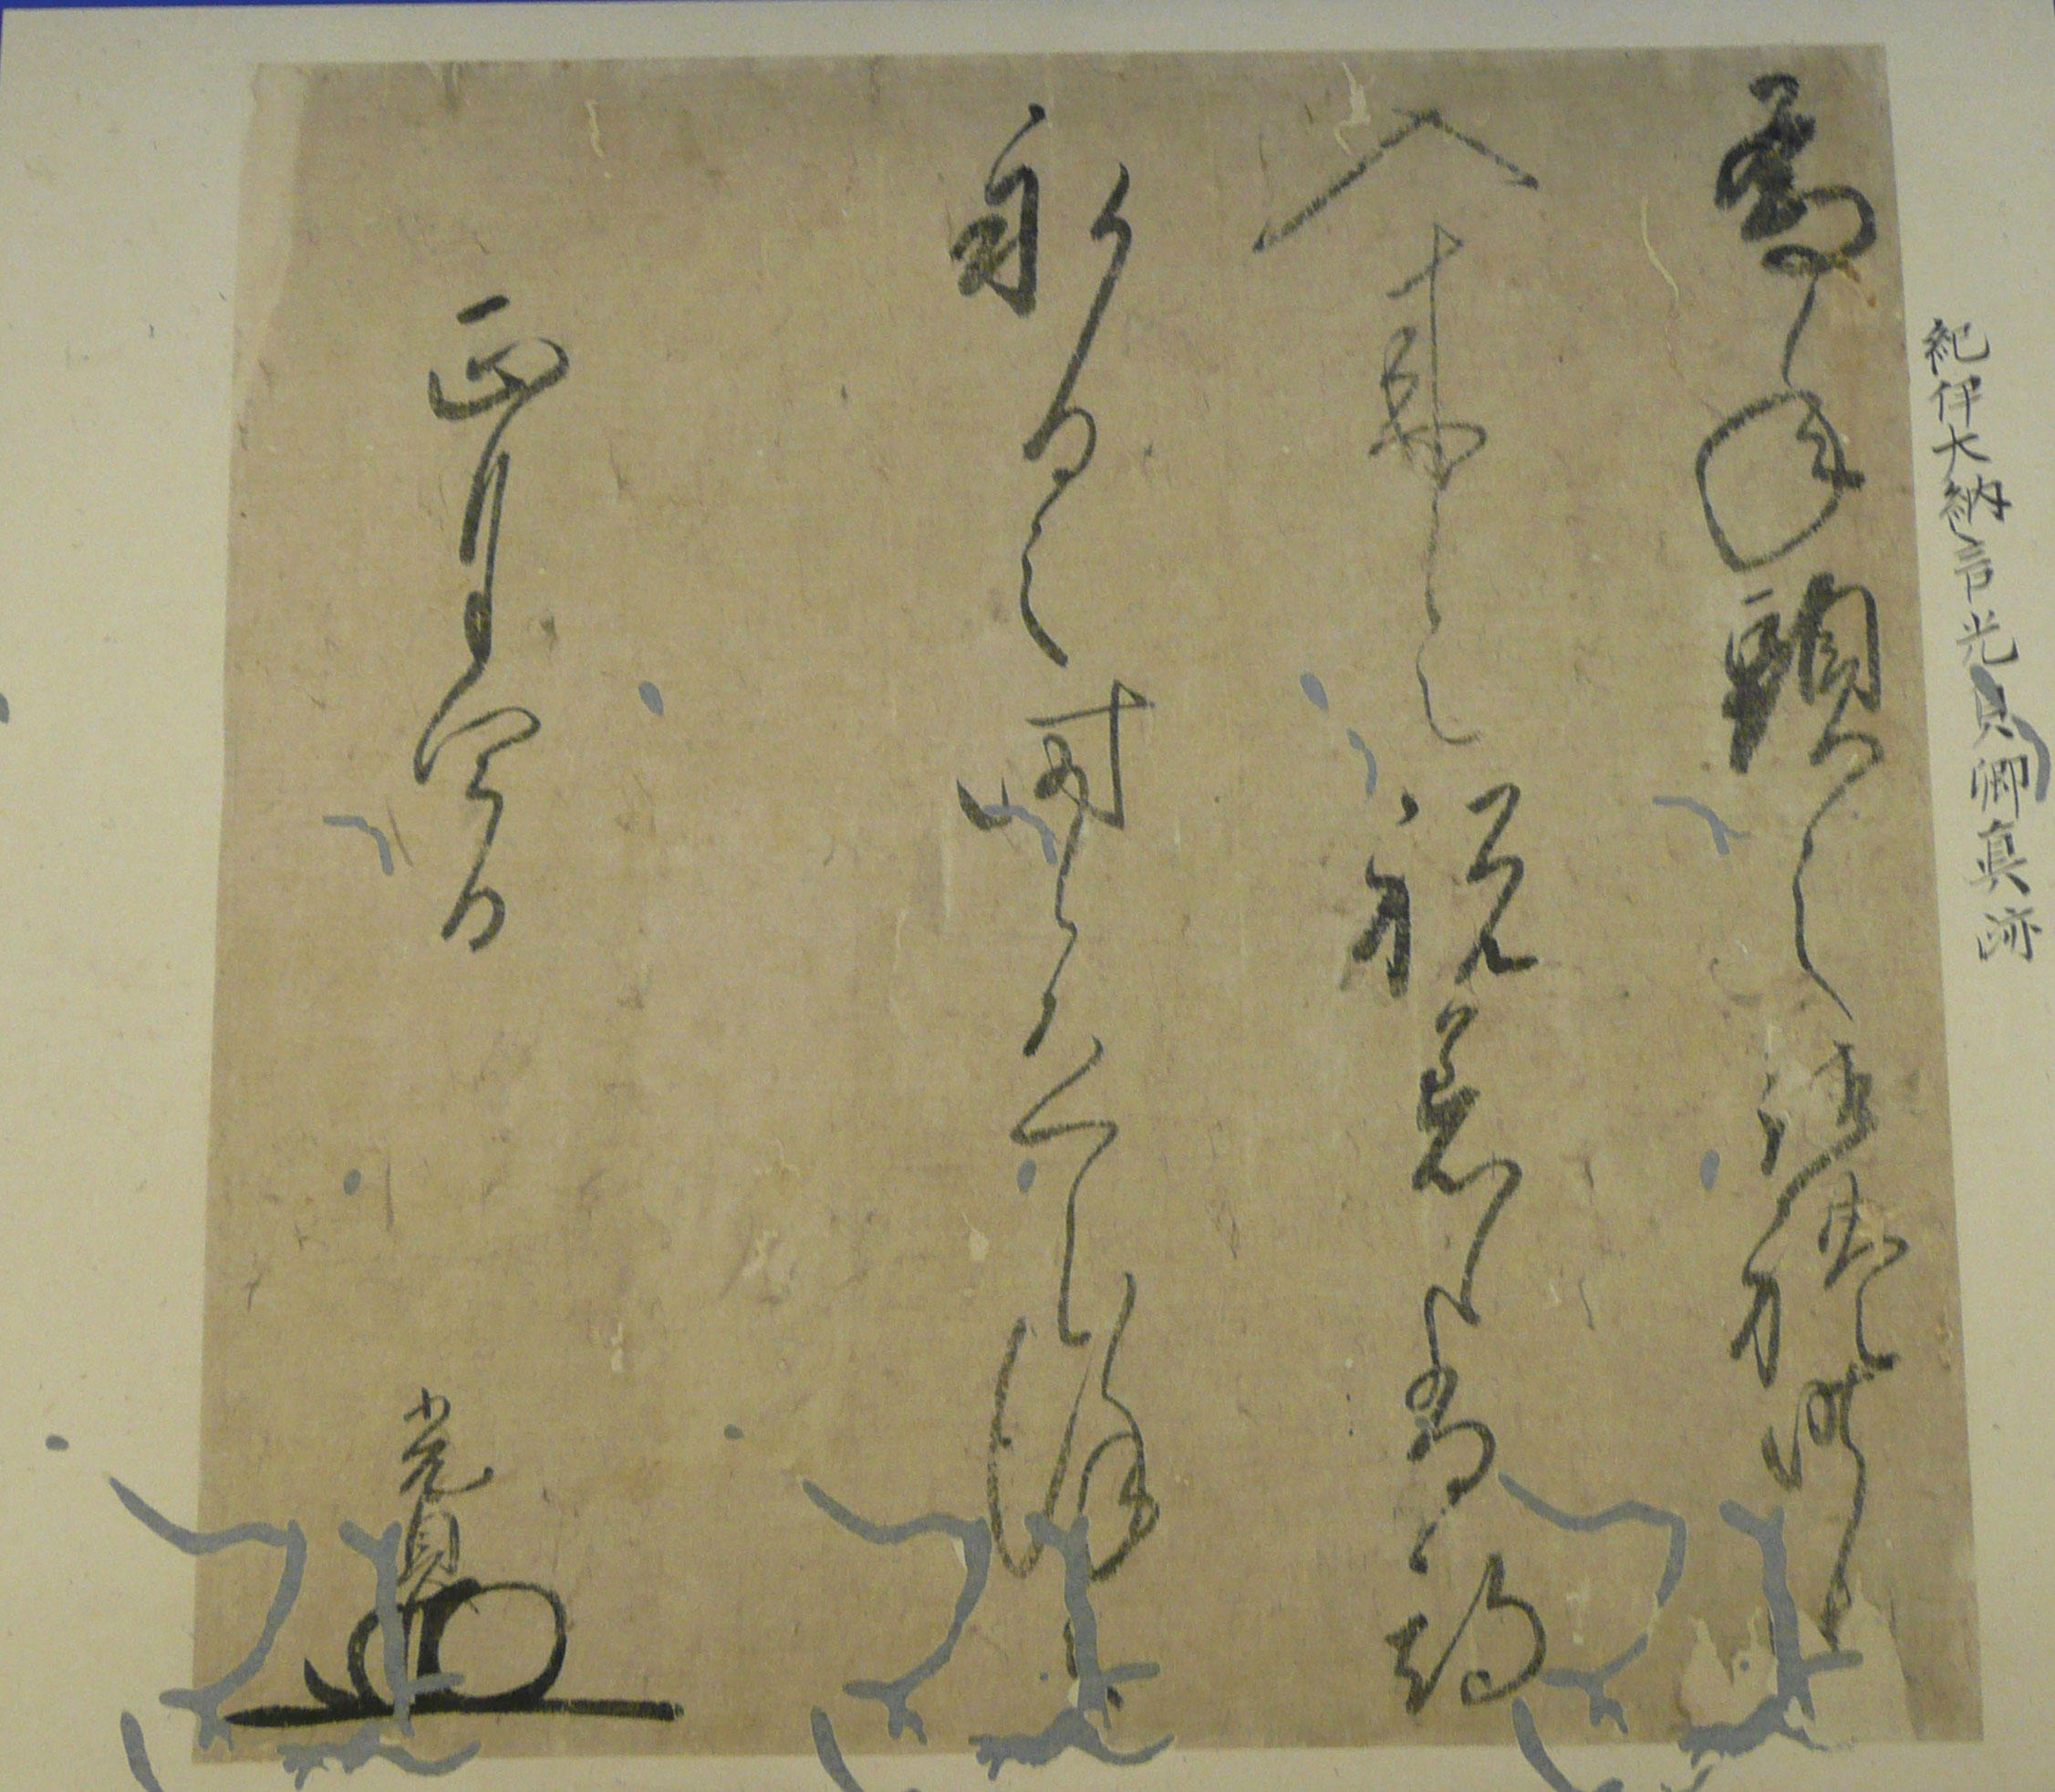 紀州徳川家二代徳川光貞書状の写真